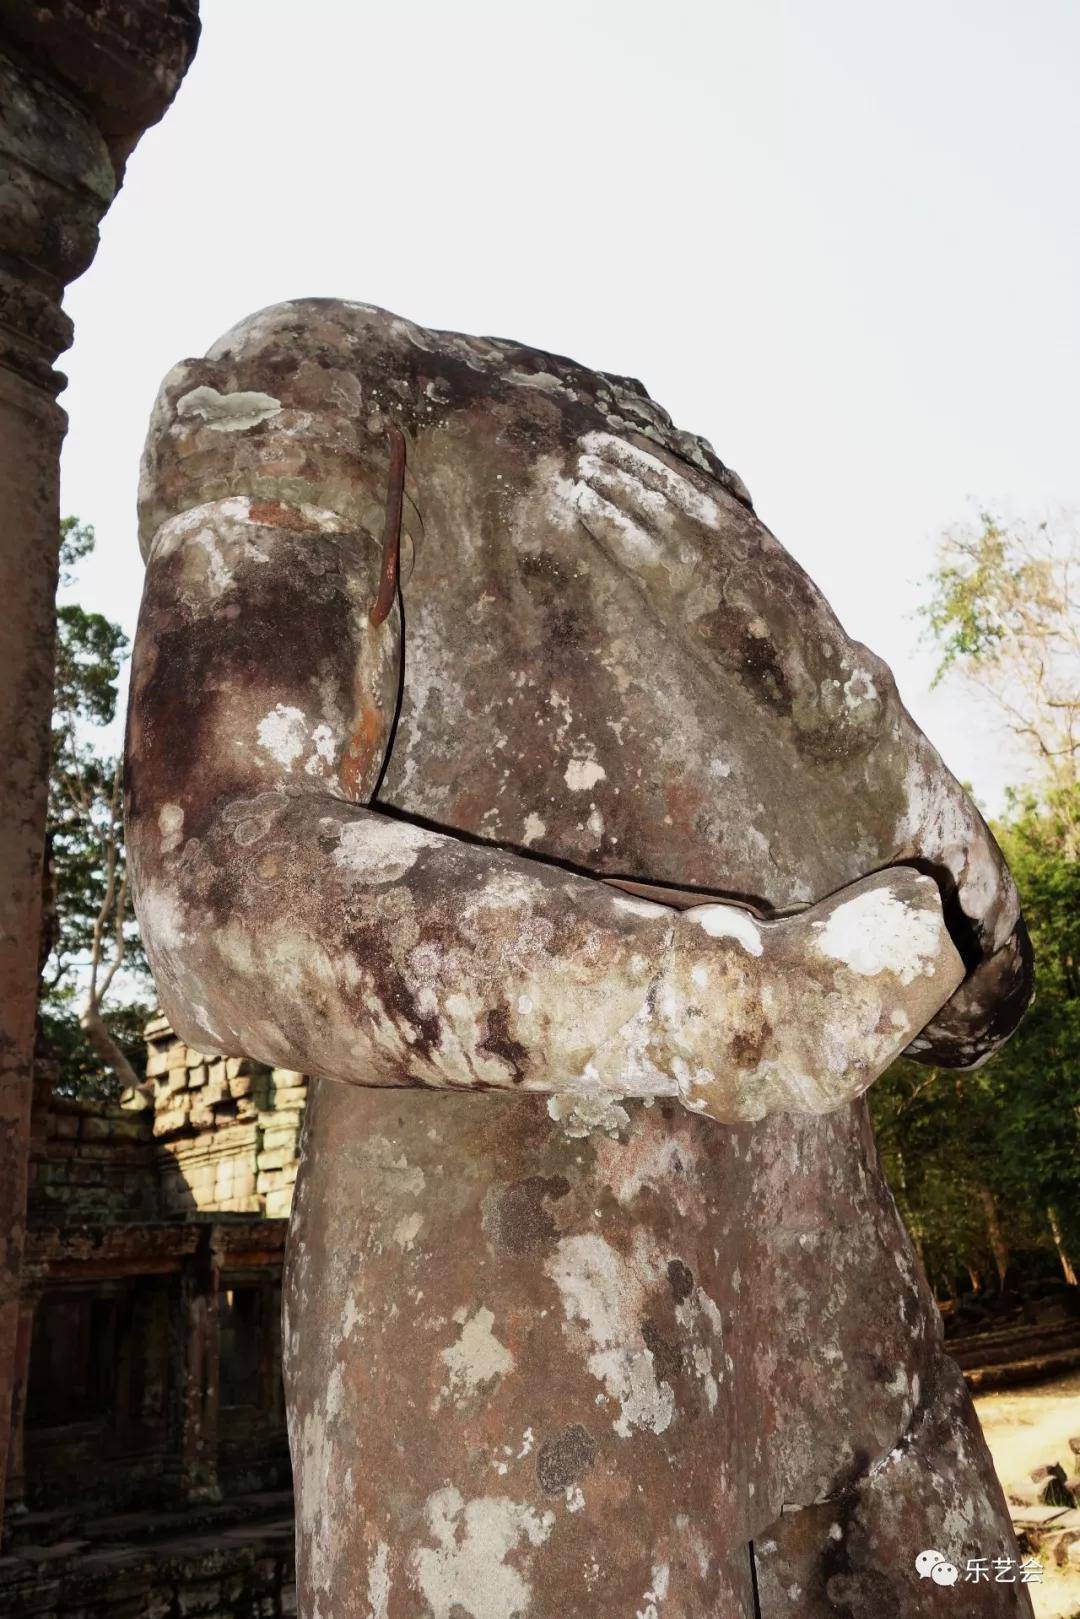 乳海争善恶 空徜见庄严：柬埔寨圣剑寺雕塑艺术欣赏